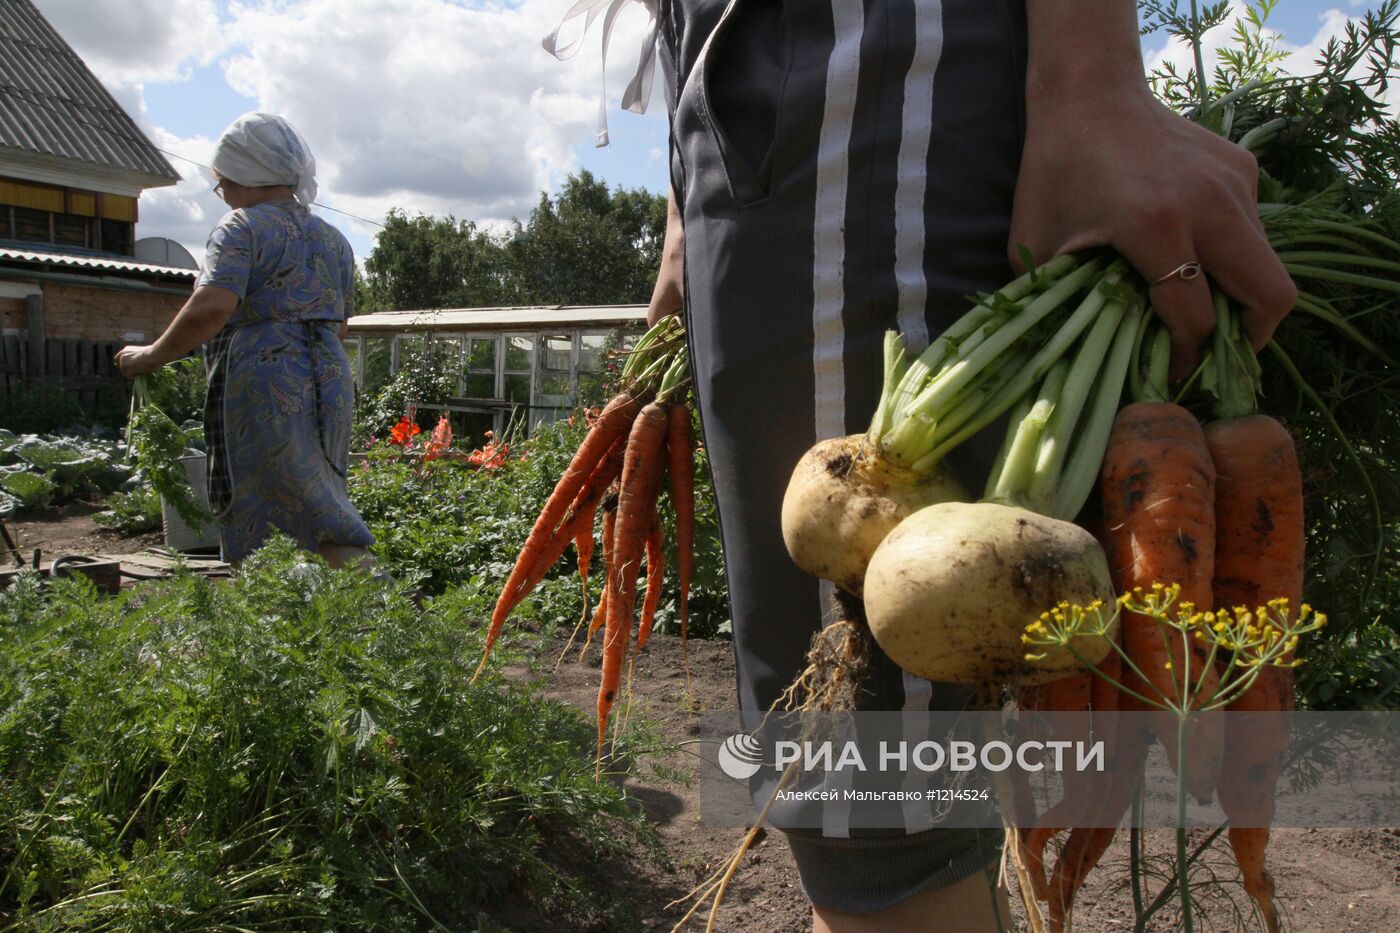 Сбор урожая на дачных участках в Омской области